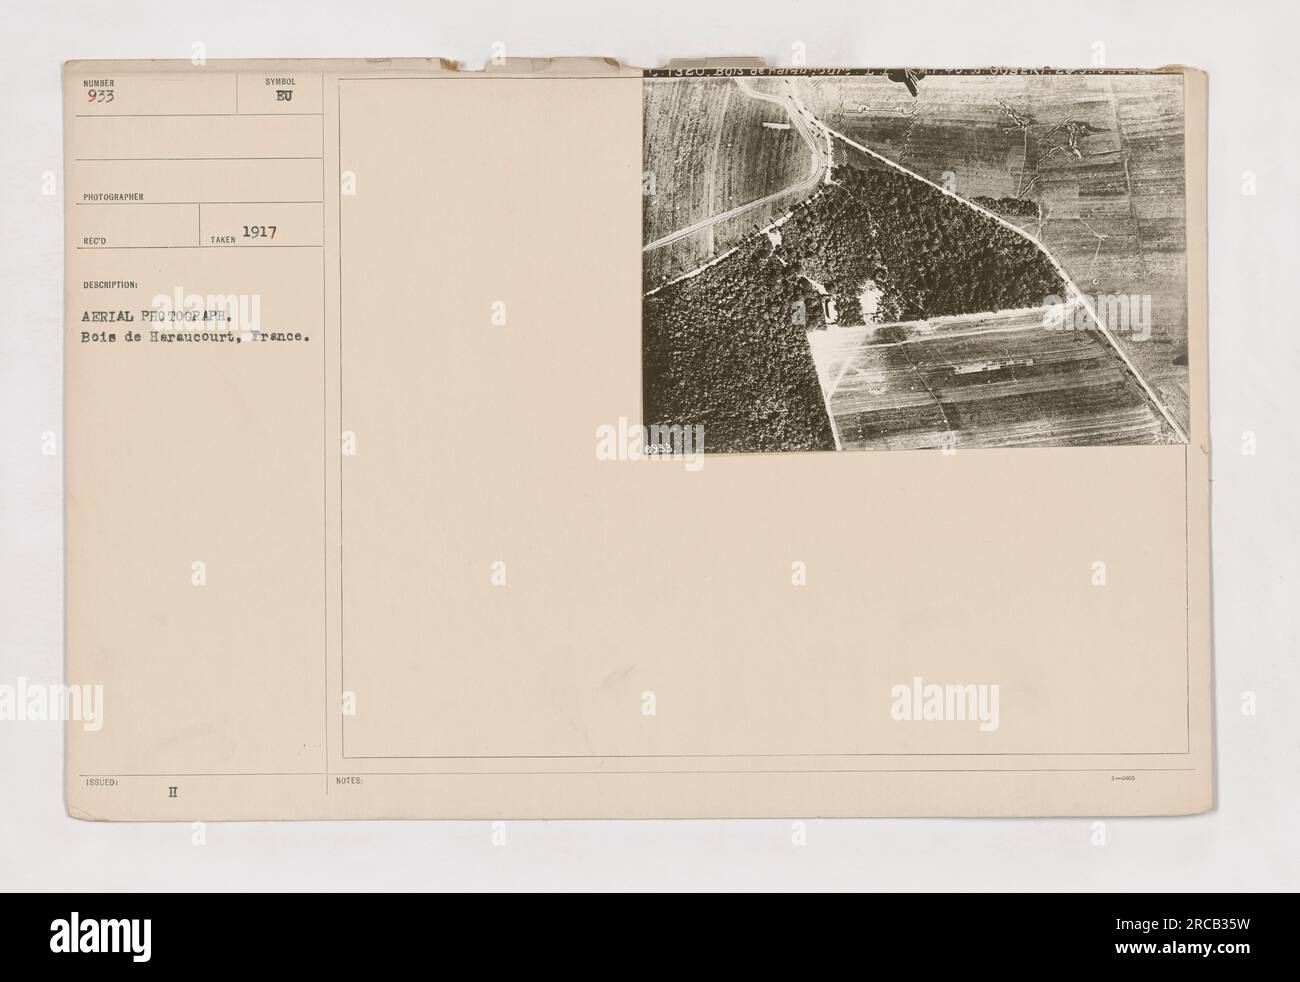 Luftaufnahme von Bois de Haraucourt, Frankreich während des Ersten Weltkriegs. Das Foto mit der Nummer 933 wurde von einem Fotografen der Reco Issue Syndol BU aufgenommen. Das Bild zeigt einen Blick auf den Wald von oben, aufgenommen im Jahr 1917. Die Notizen des Fotografen zeigen, dass es Teil einer Serie mit der Referenznummer 0988 war. Stockfoto